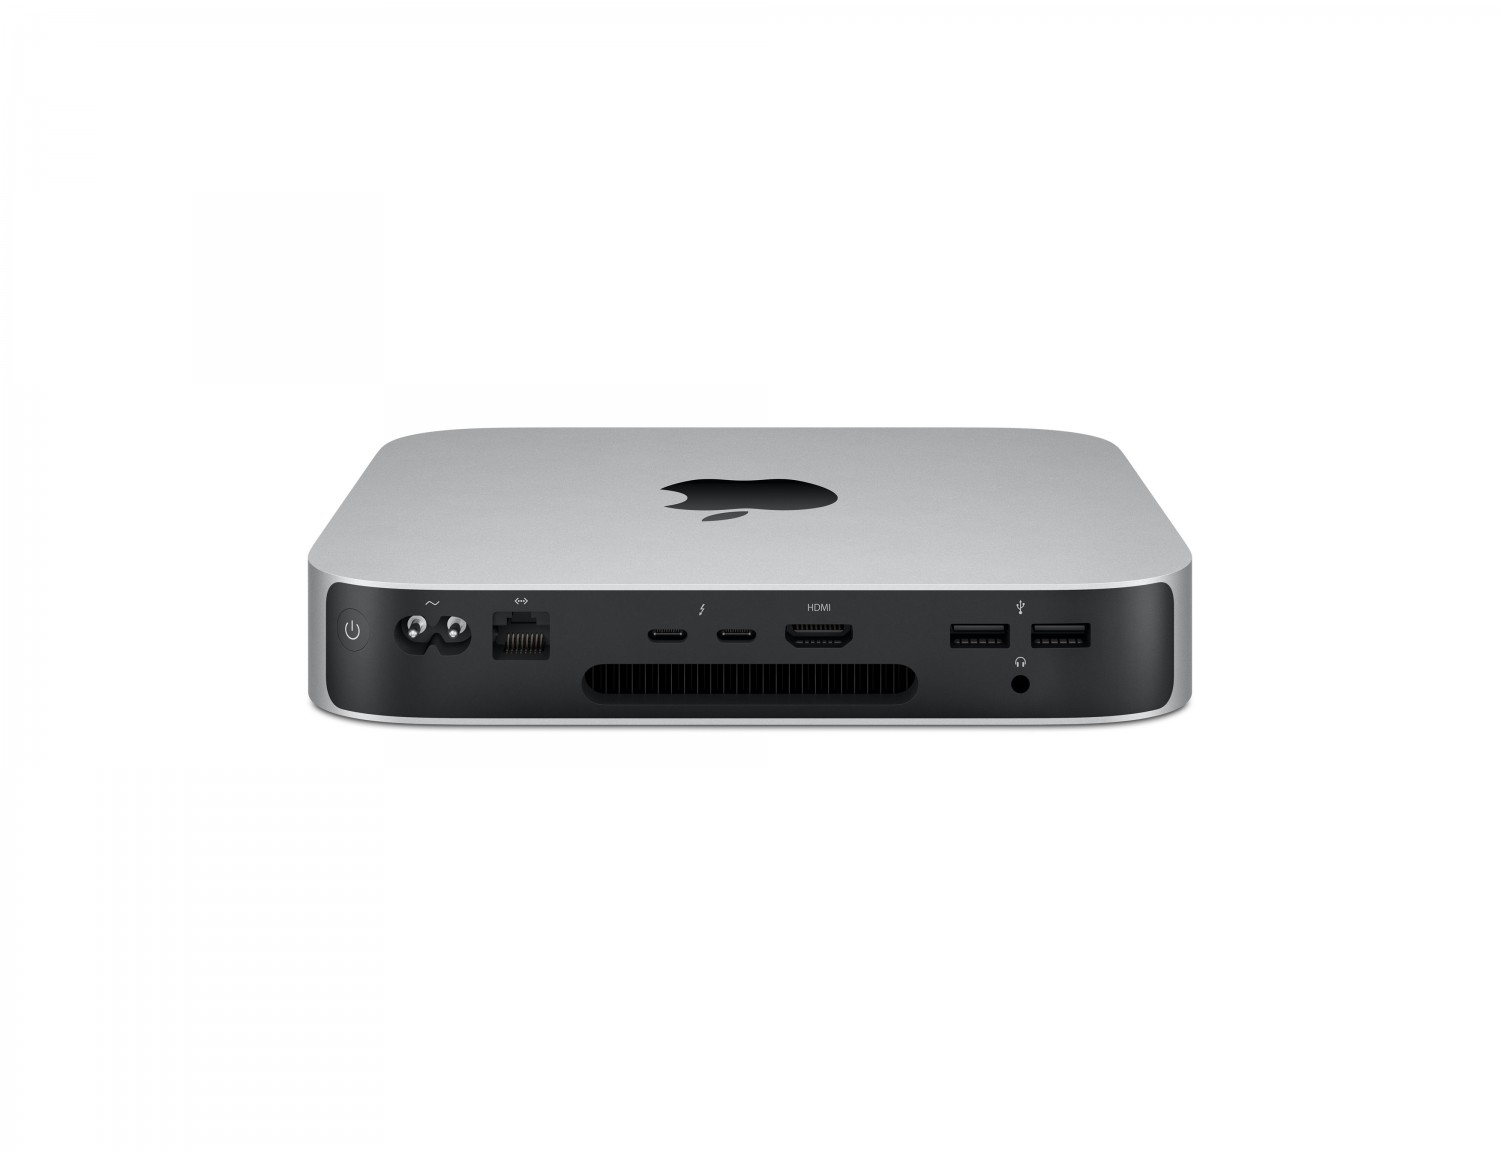 Apple Mac Mini M1 Chip 8-Core CPU / 8-Core GPU / 8GB Memory / 256GB SSD